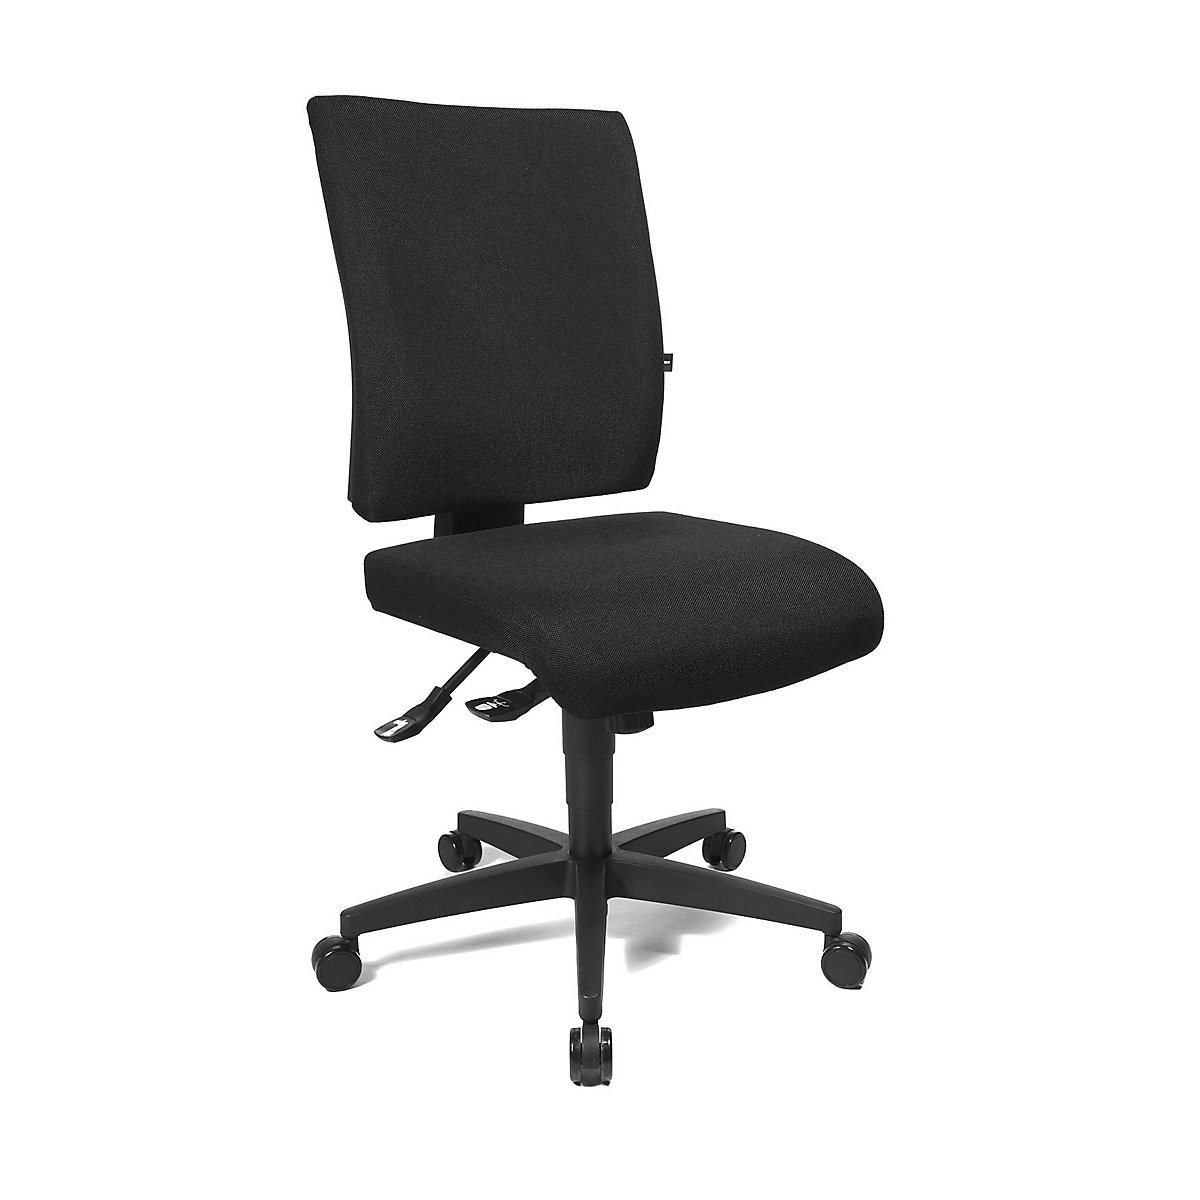 Cadeira giratória de escritório COMFORT – Topstar, encosto regulável em altura, forro preto-24